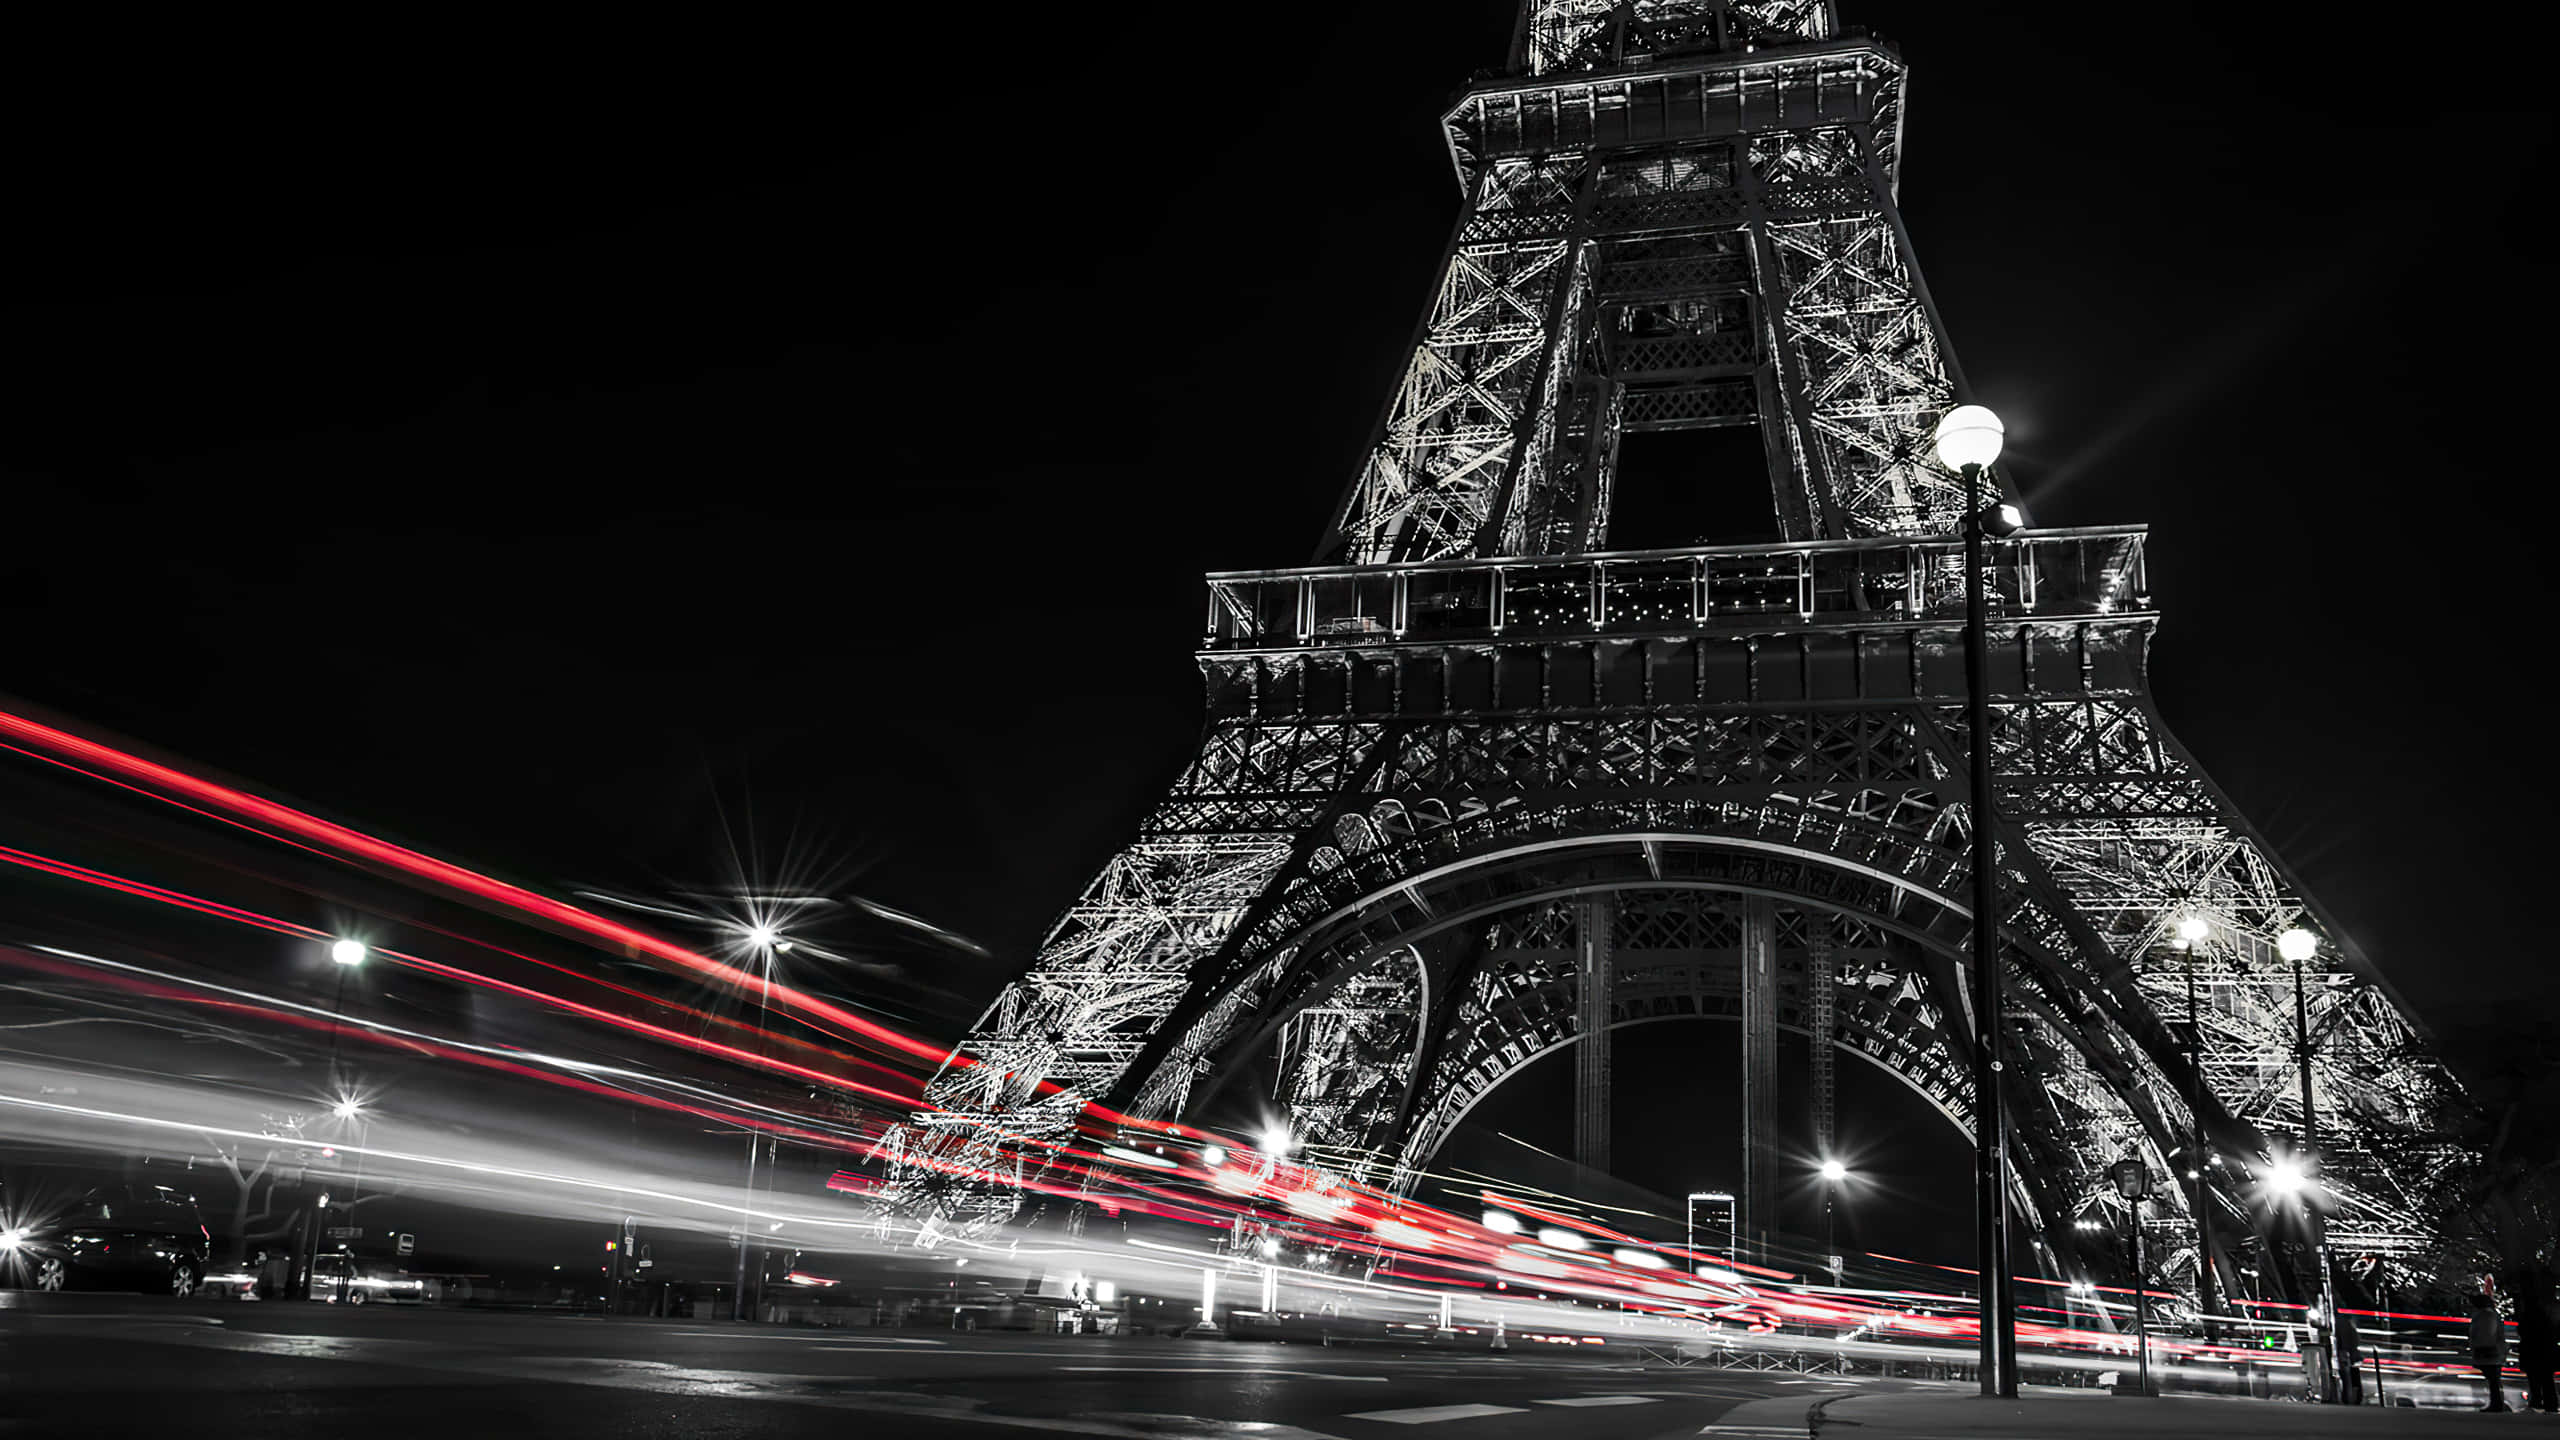 Visitantesdisfrutando De La Vista Única Y Romántica De La Torre Eiffel Por La Noche.